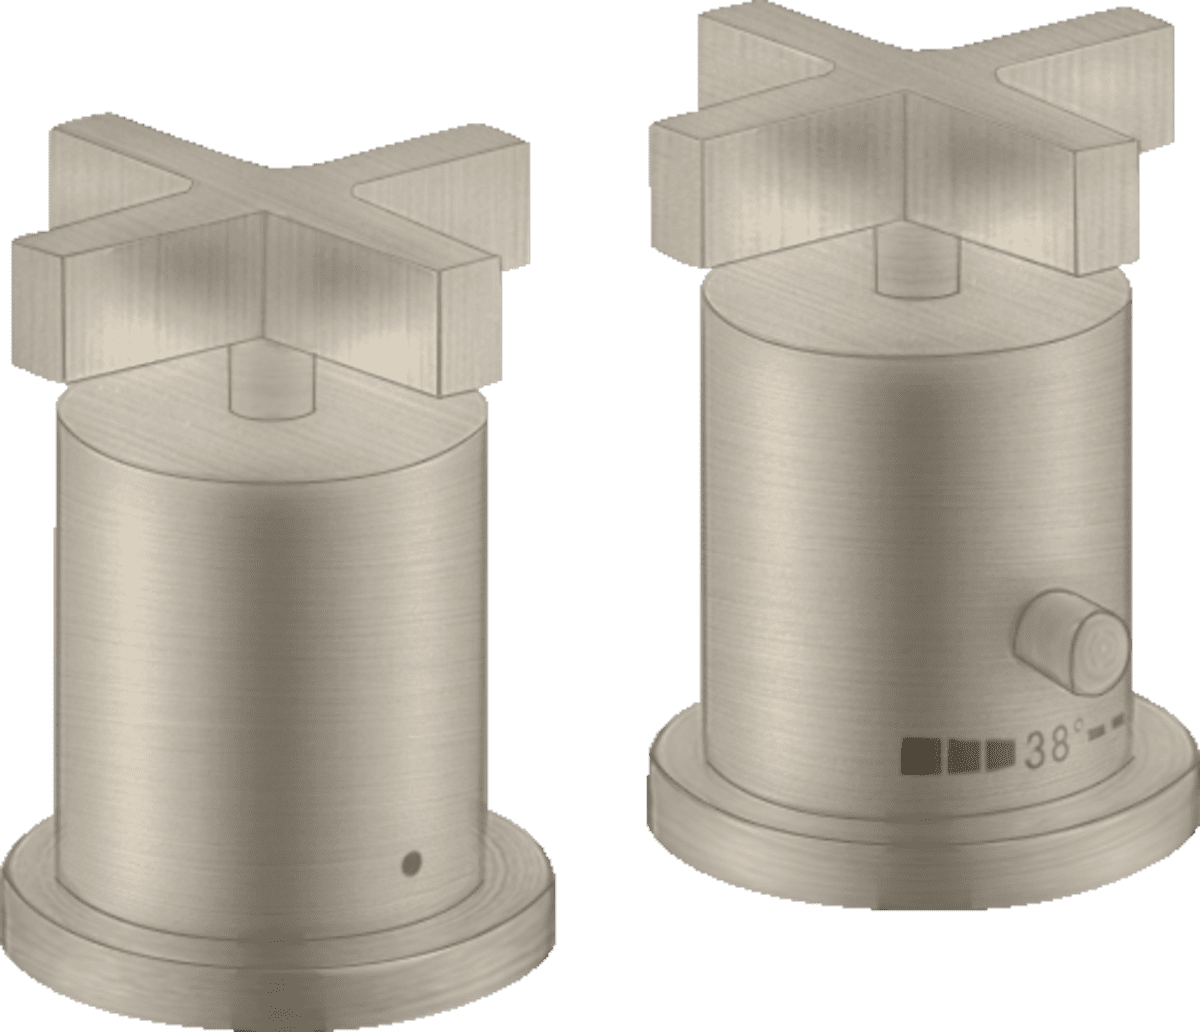 εικόνα του HANSGROHE AXOR Citterio 2-hole rim mounted thermostatic bath mixer with cross handles #39480820 - Brushed Nickel